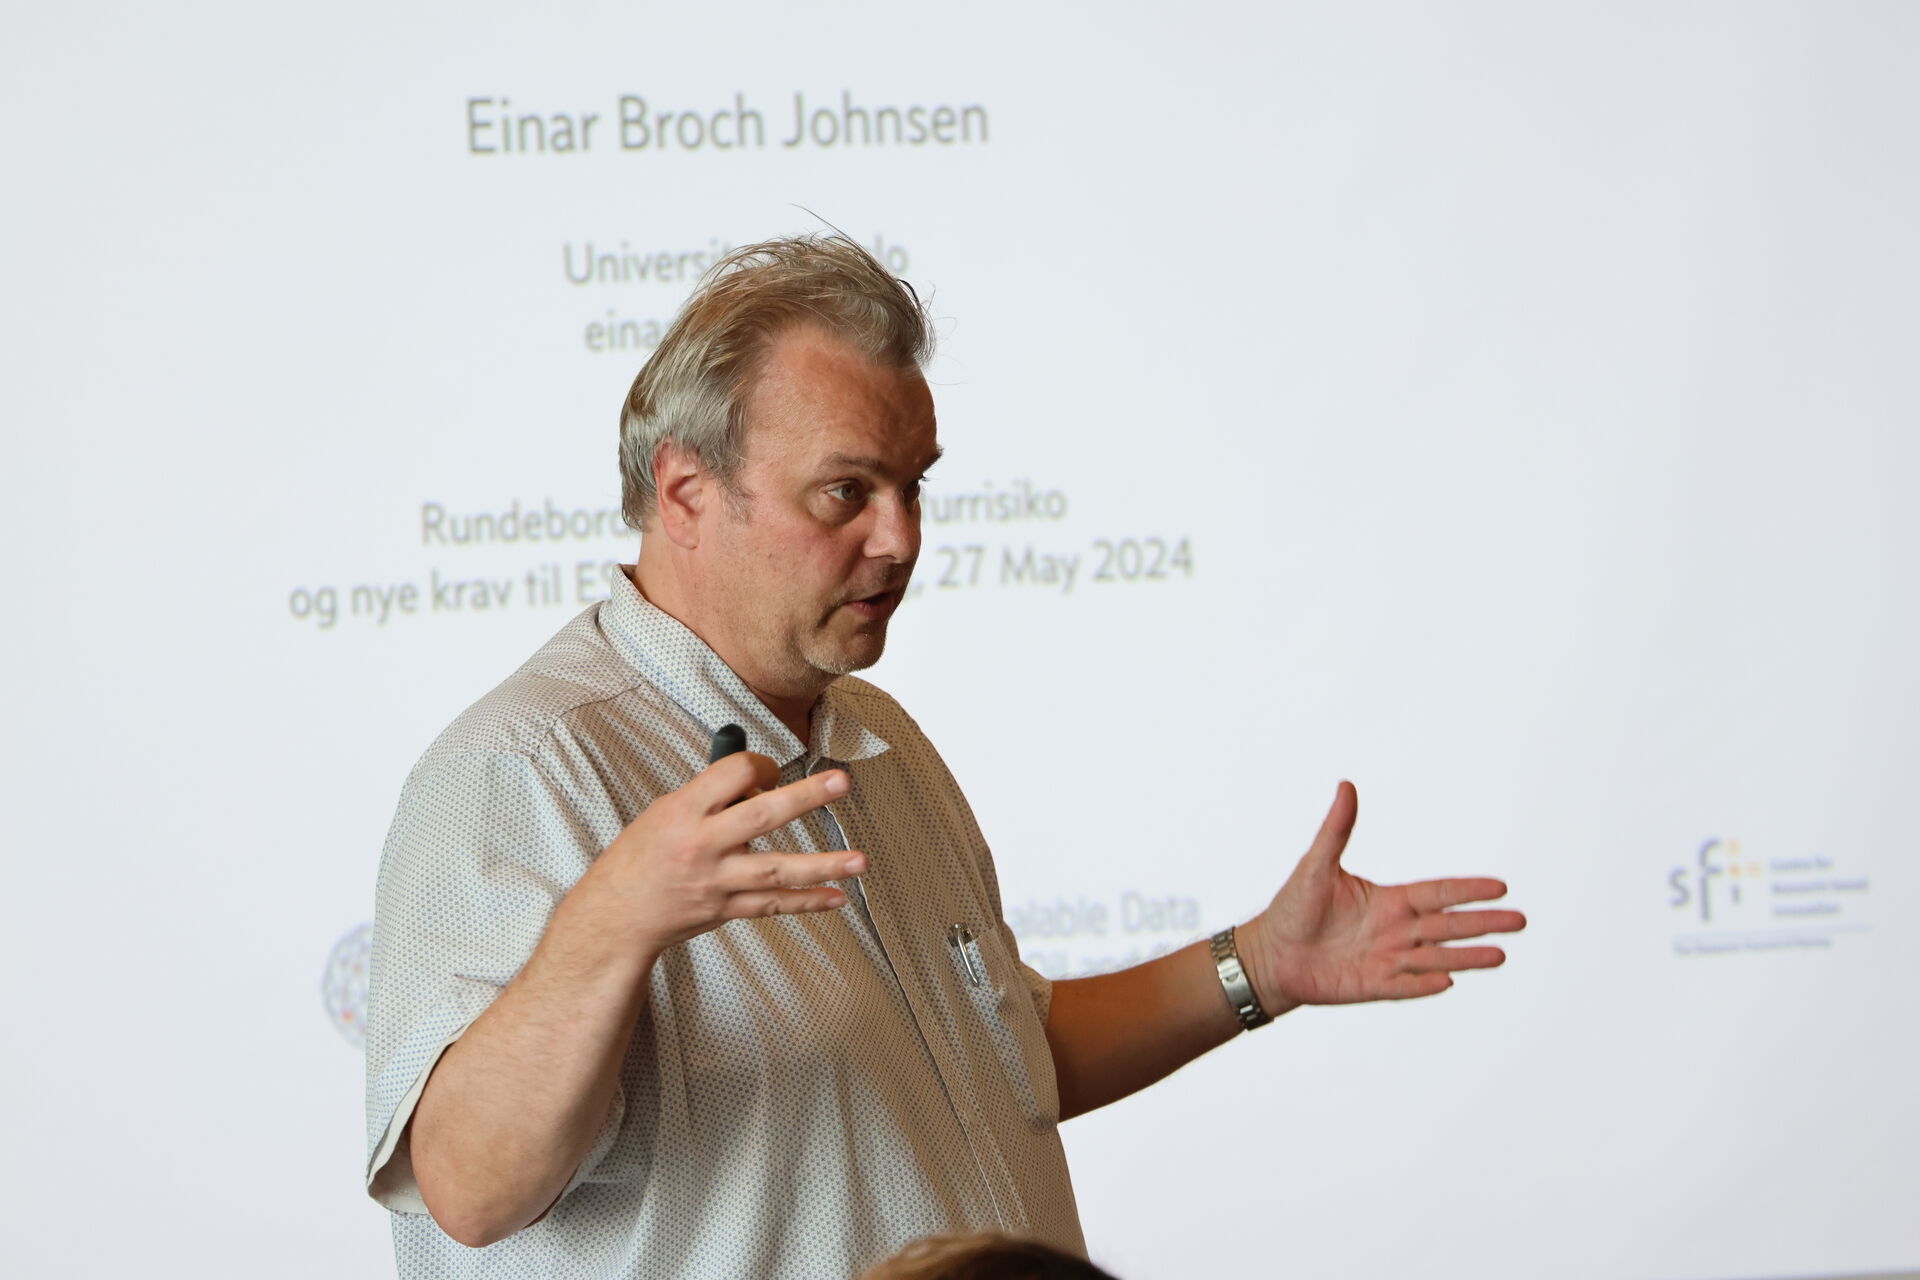 Einar Broch Johnsen